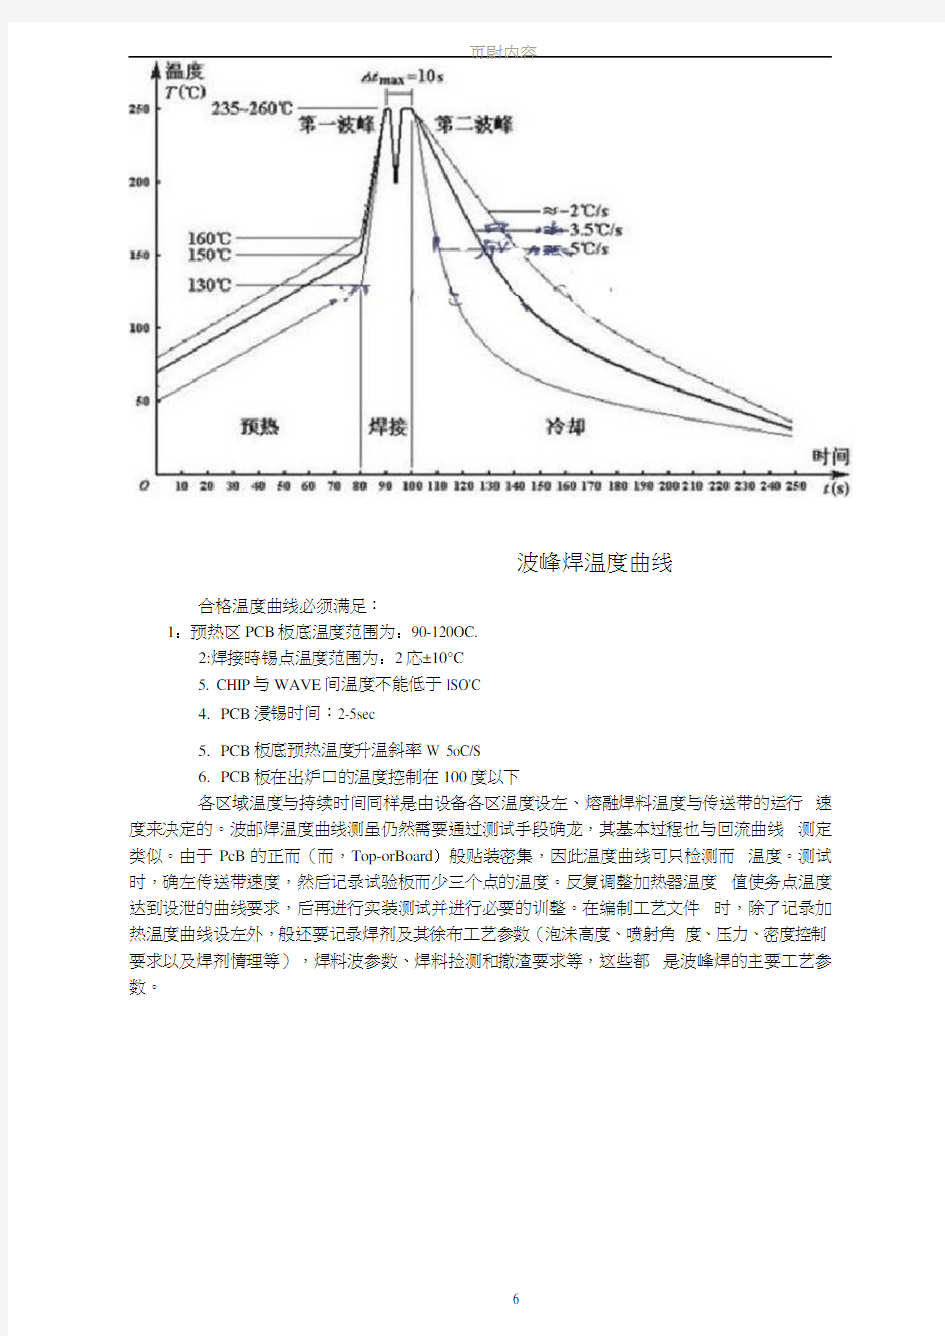 波峰焊温度曲线图及温度控制标准(20201230145234)